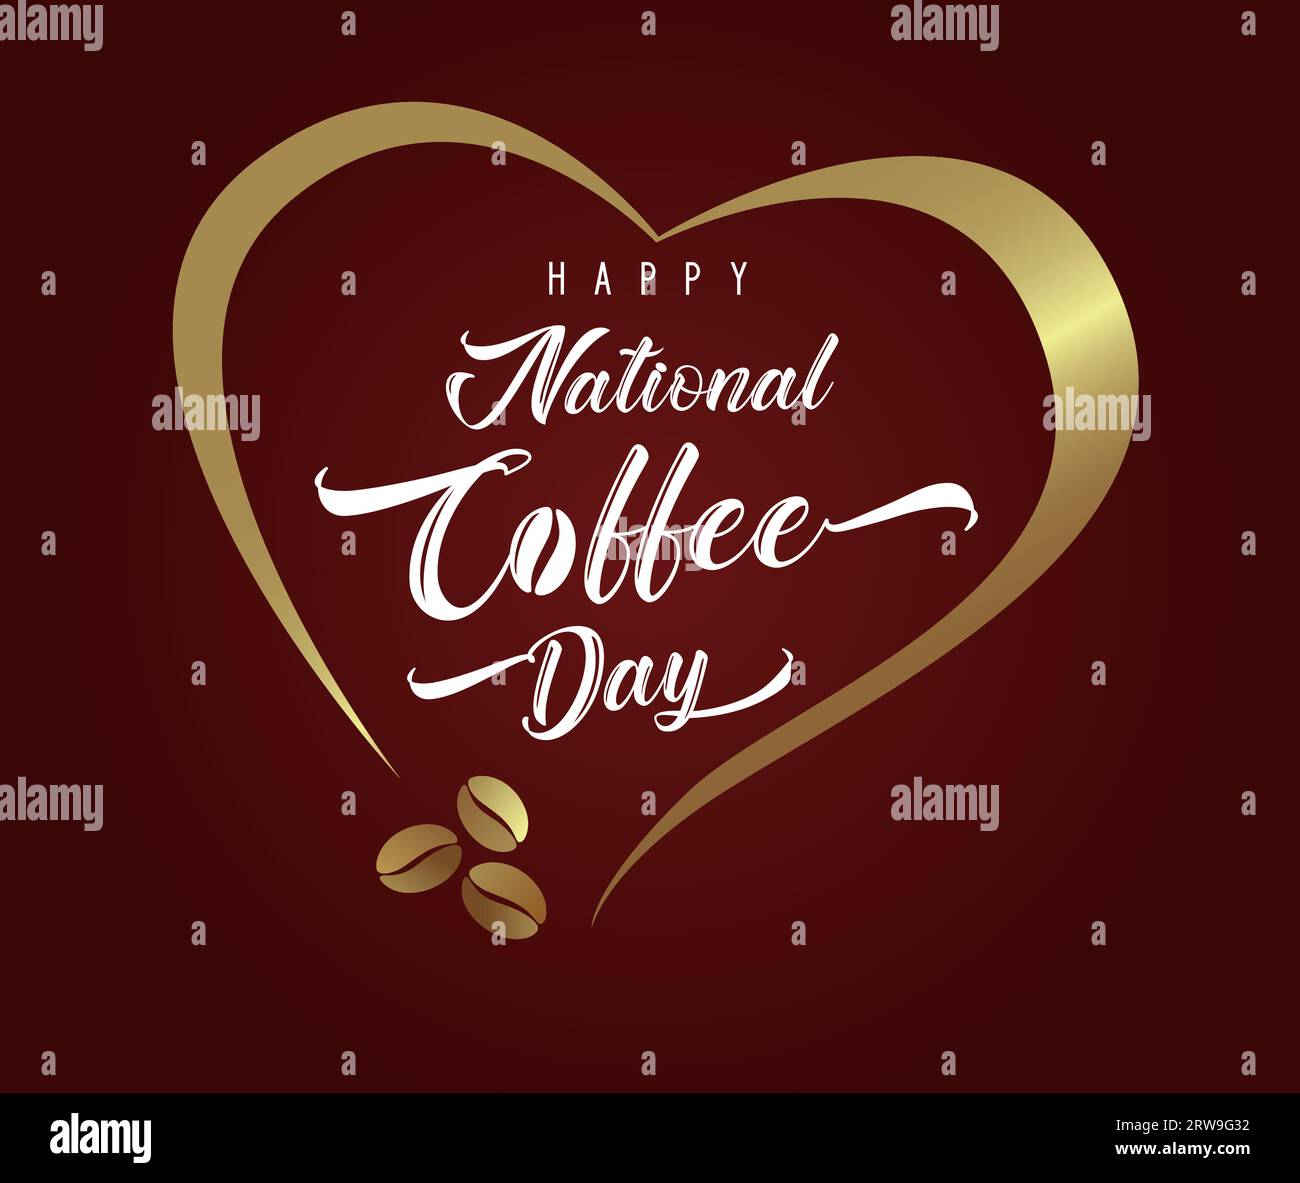 Herzlichen Glückwunsch zum Nationalen Kaffeetag. Social-Media-Beitrag zum Internationalen Kaffeetag. Netzwerkbanner. Werbegestaltung für Straßencafe Stock Vektor